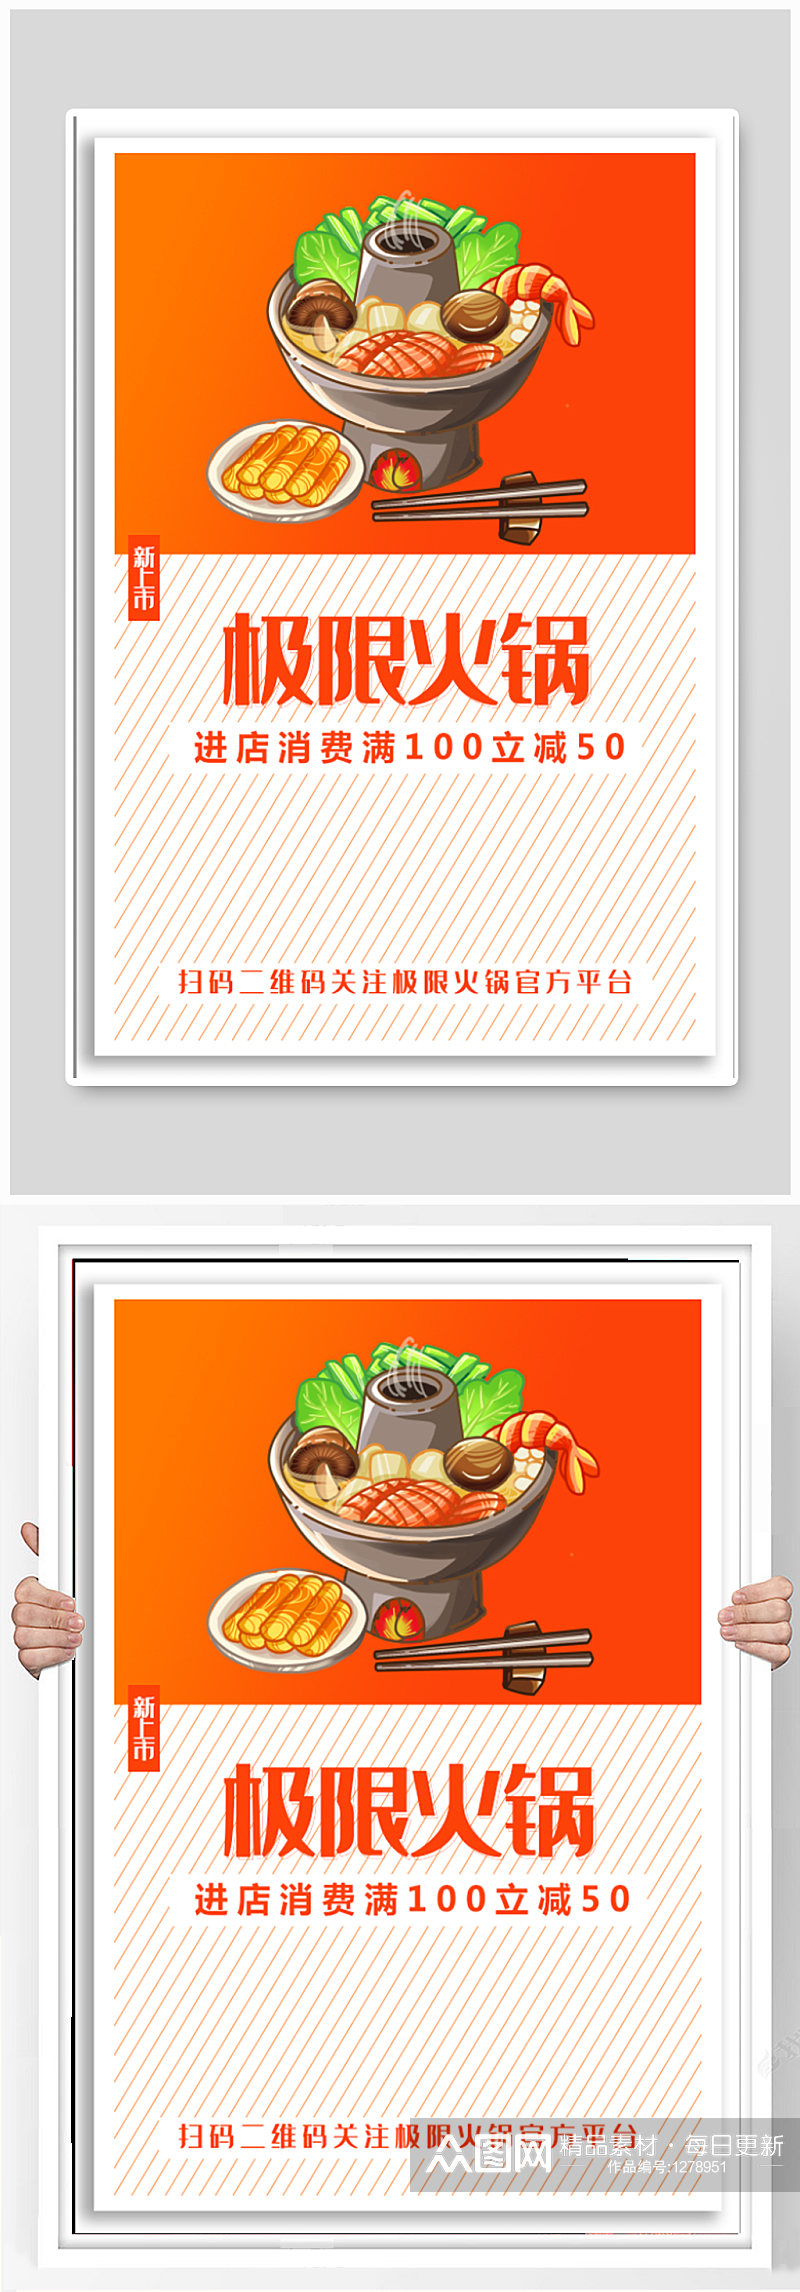 火锅店美食宣传海报素材